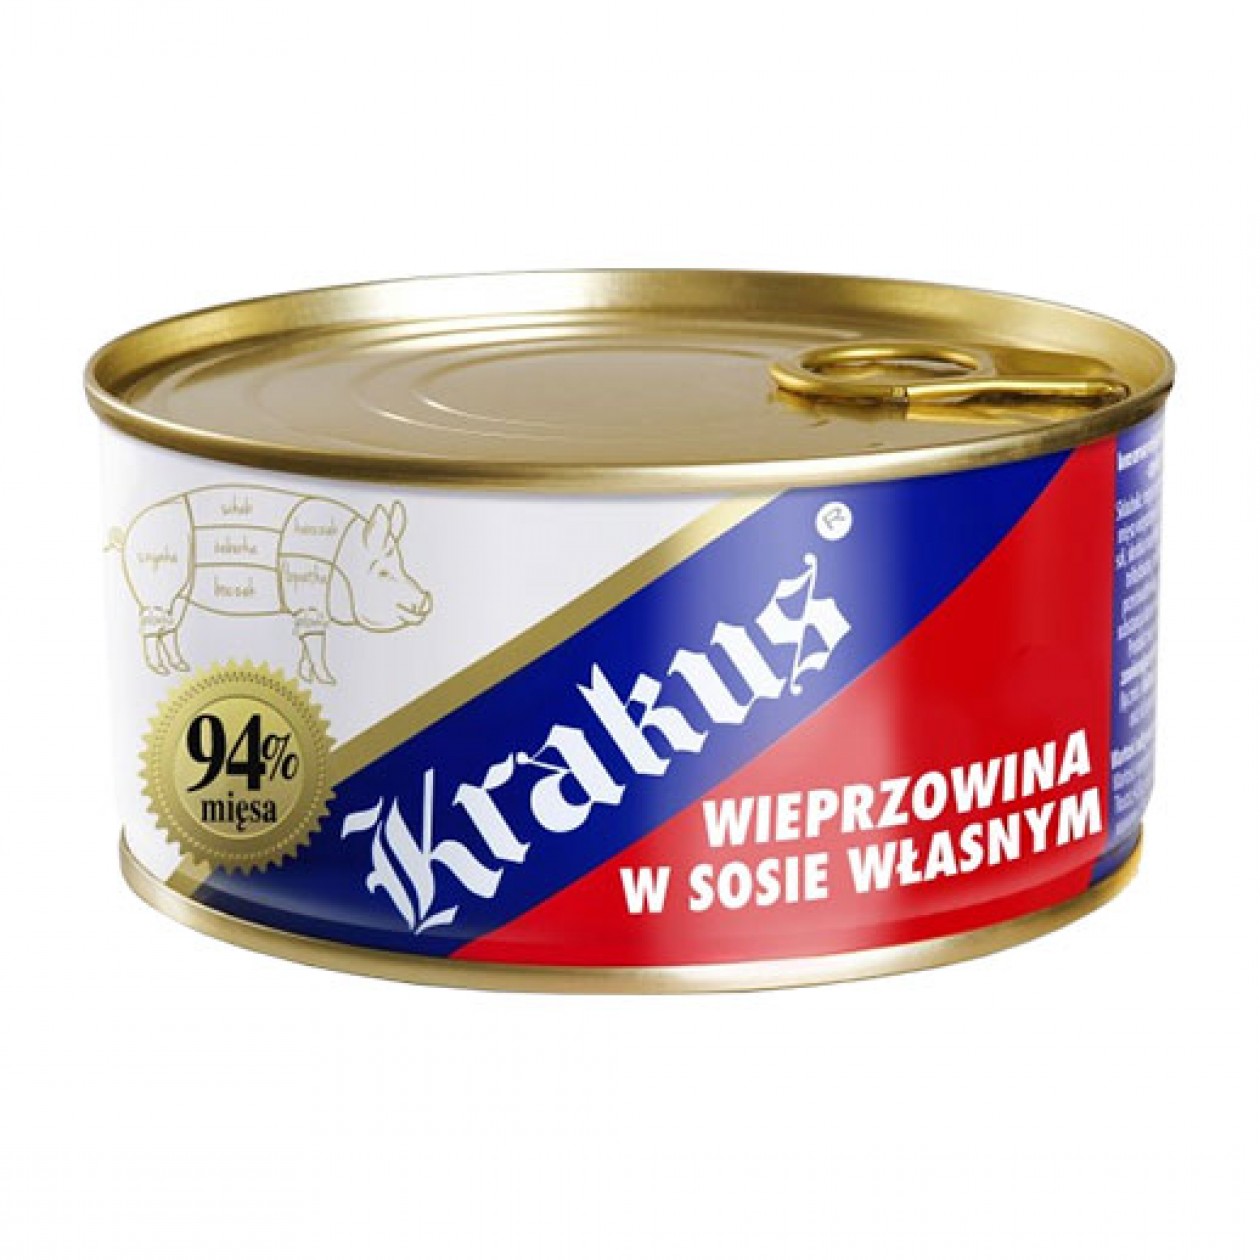 Krakus Canned Meat Wieprzowina (9) 6x300g